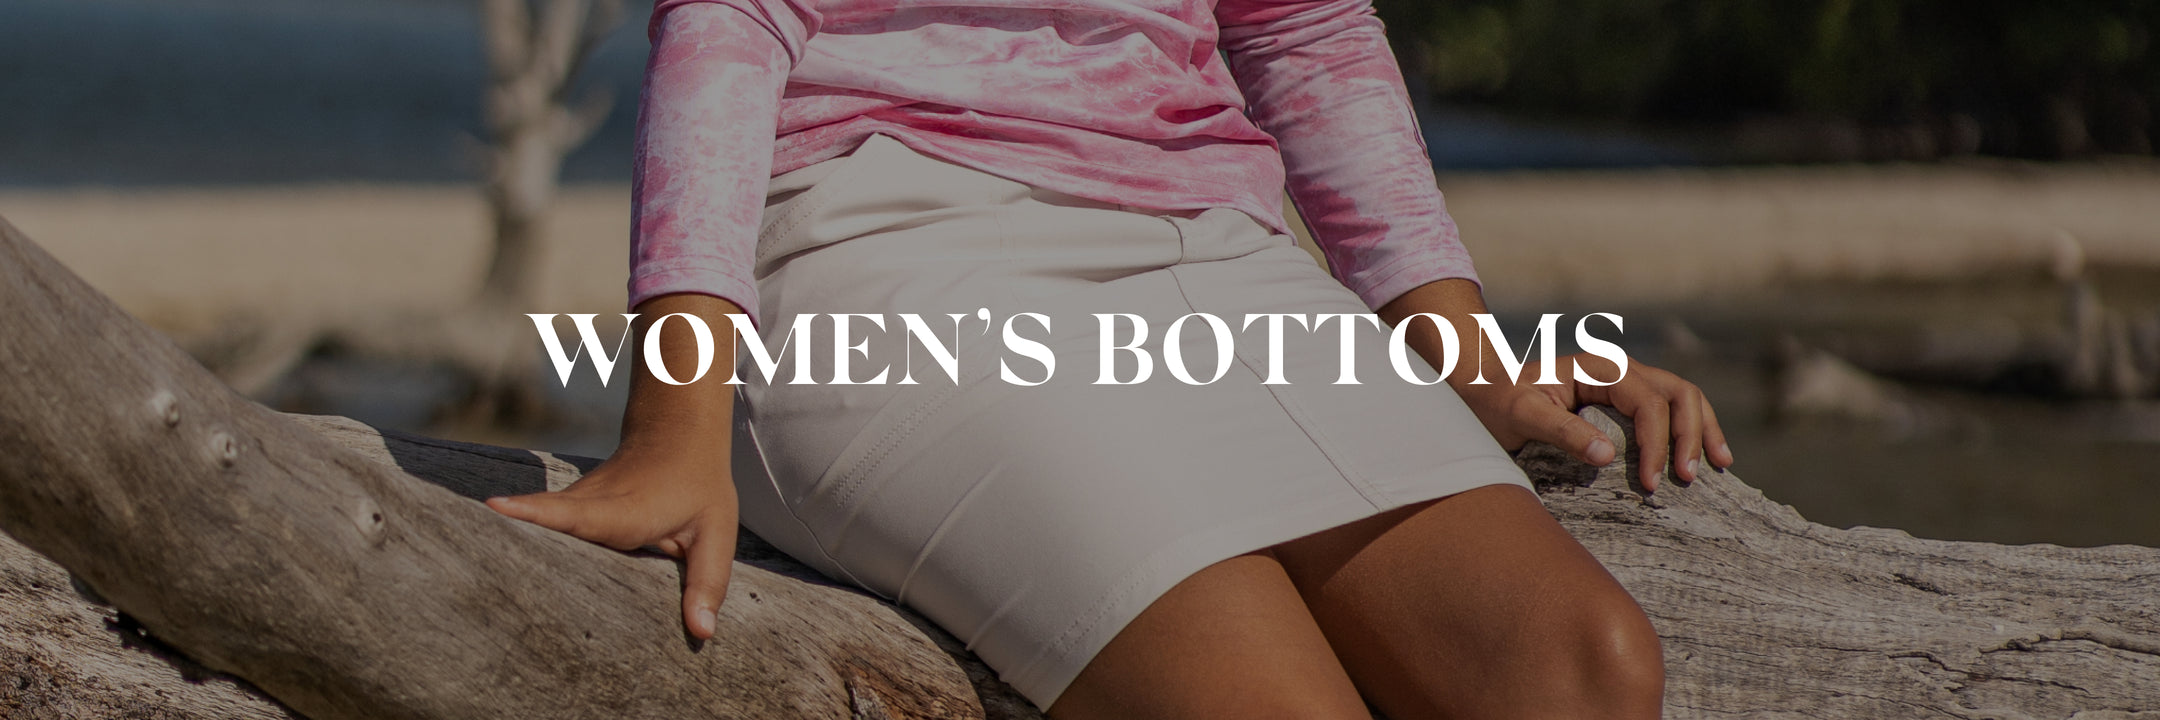 Women’s Bottoms